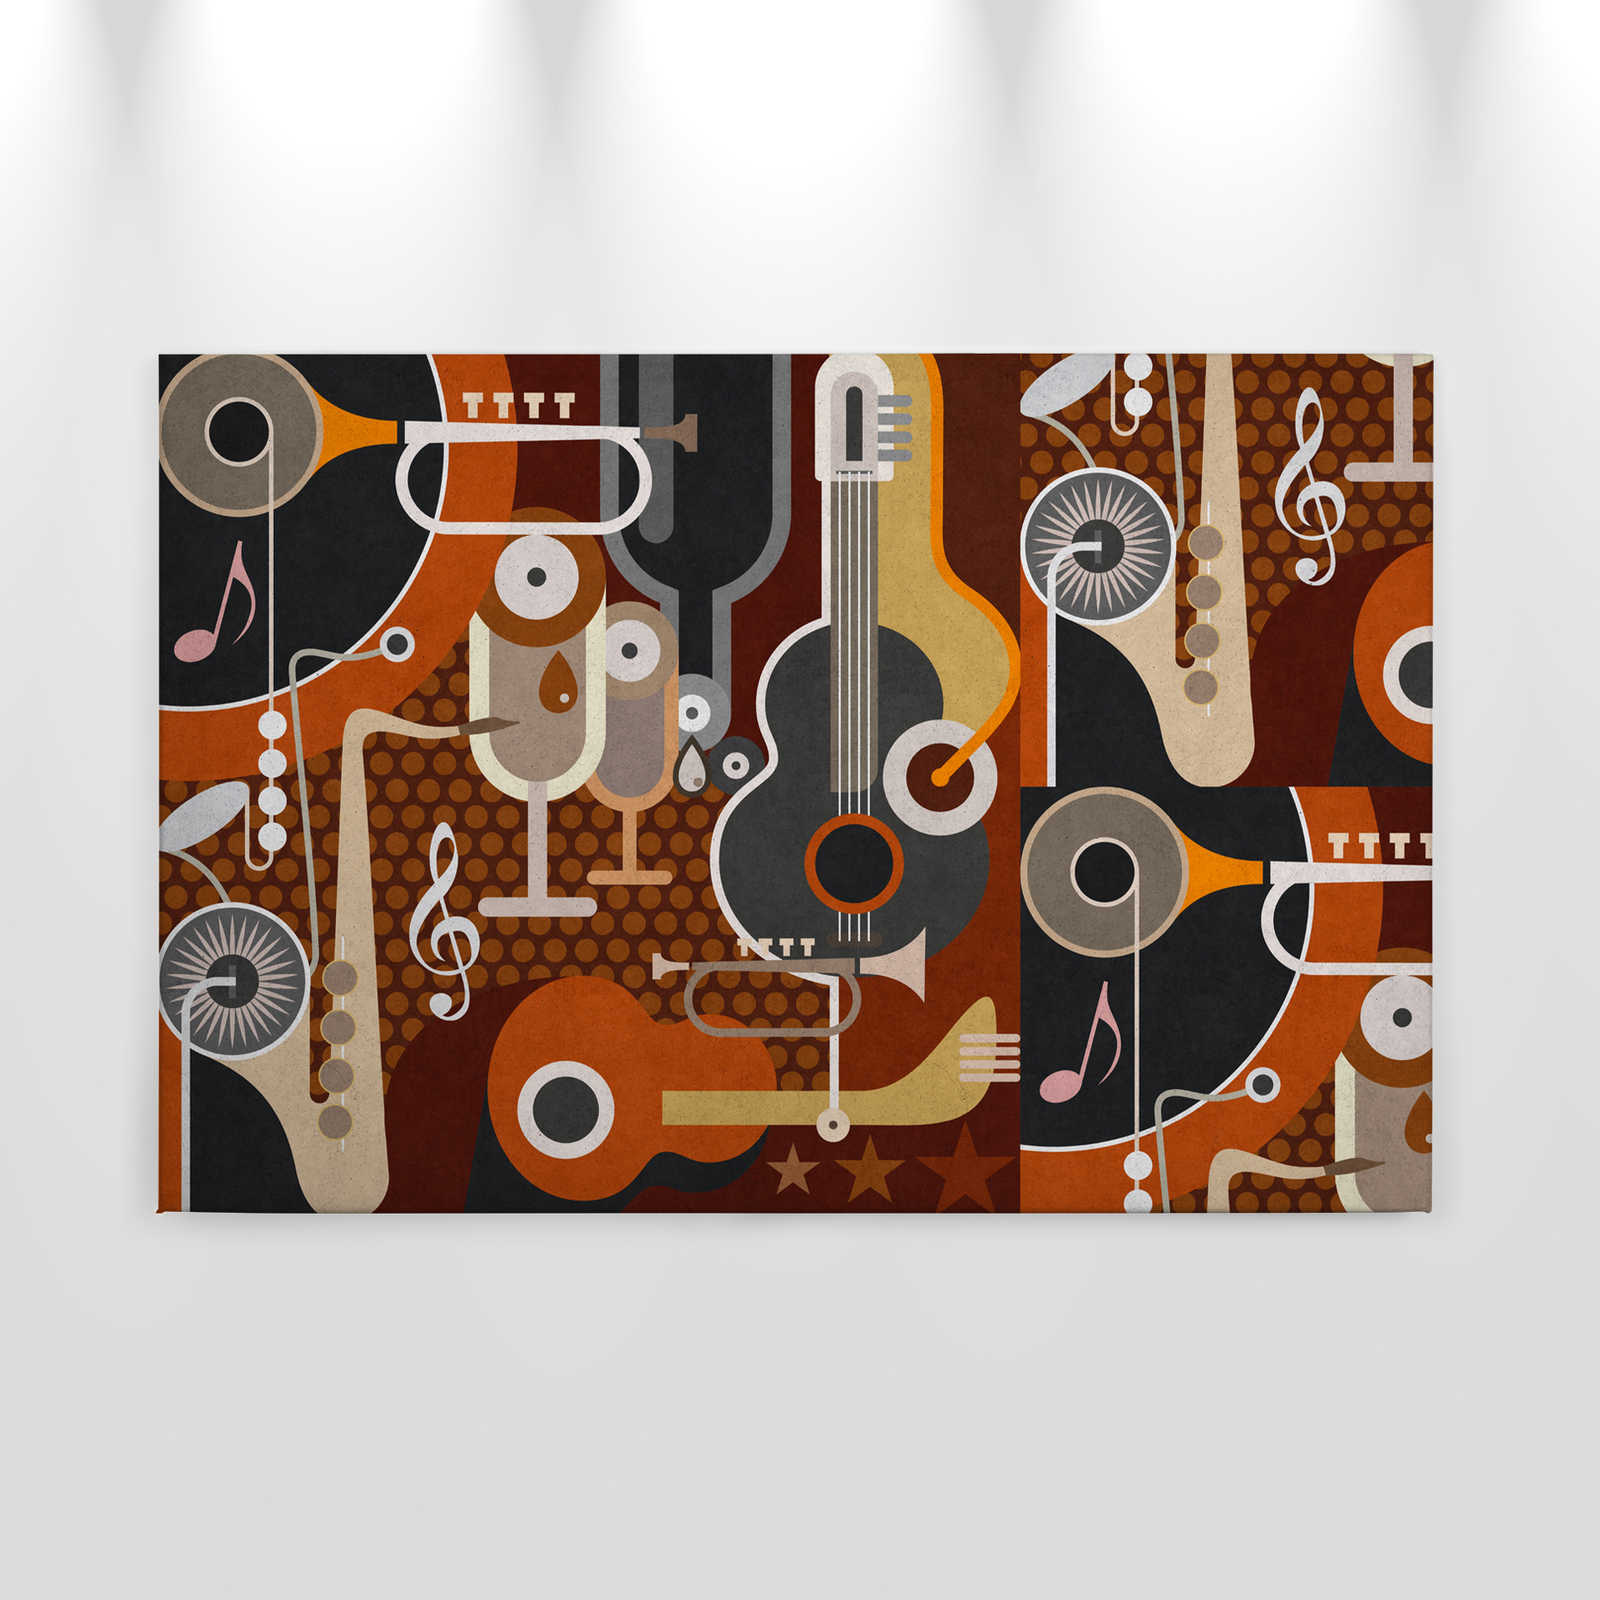             Pared de sonido 1 - Pintura sobre lienzo en estructura de hormigón, instrumentos musicales abstractos - 0,90 m x 0,60 m
        